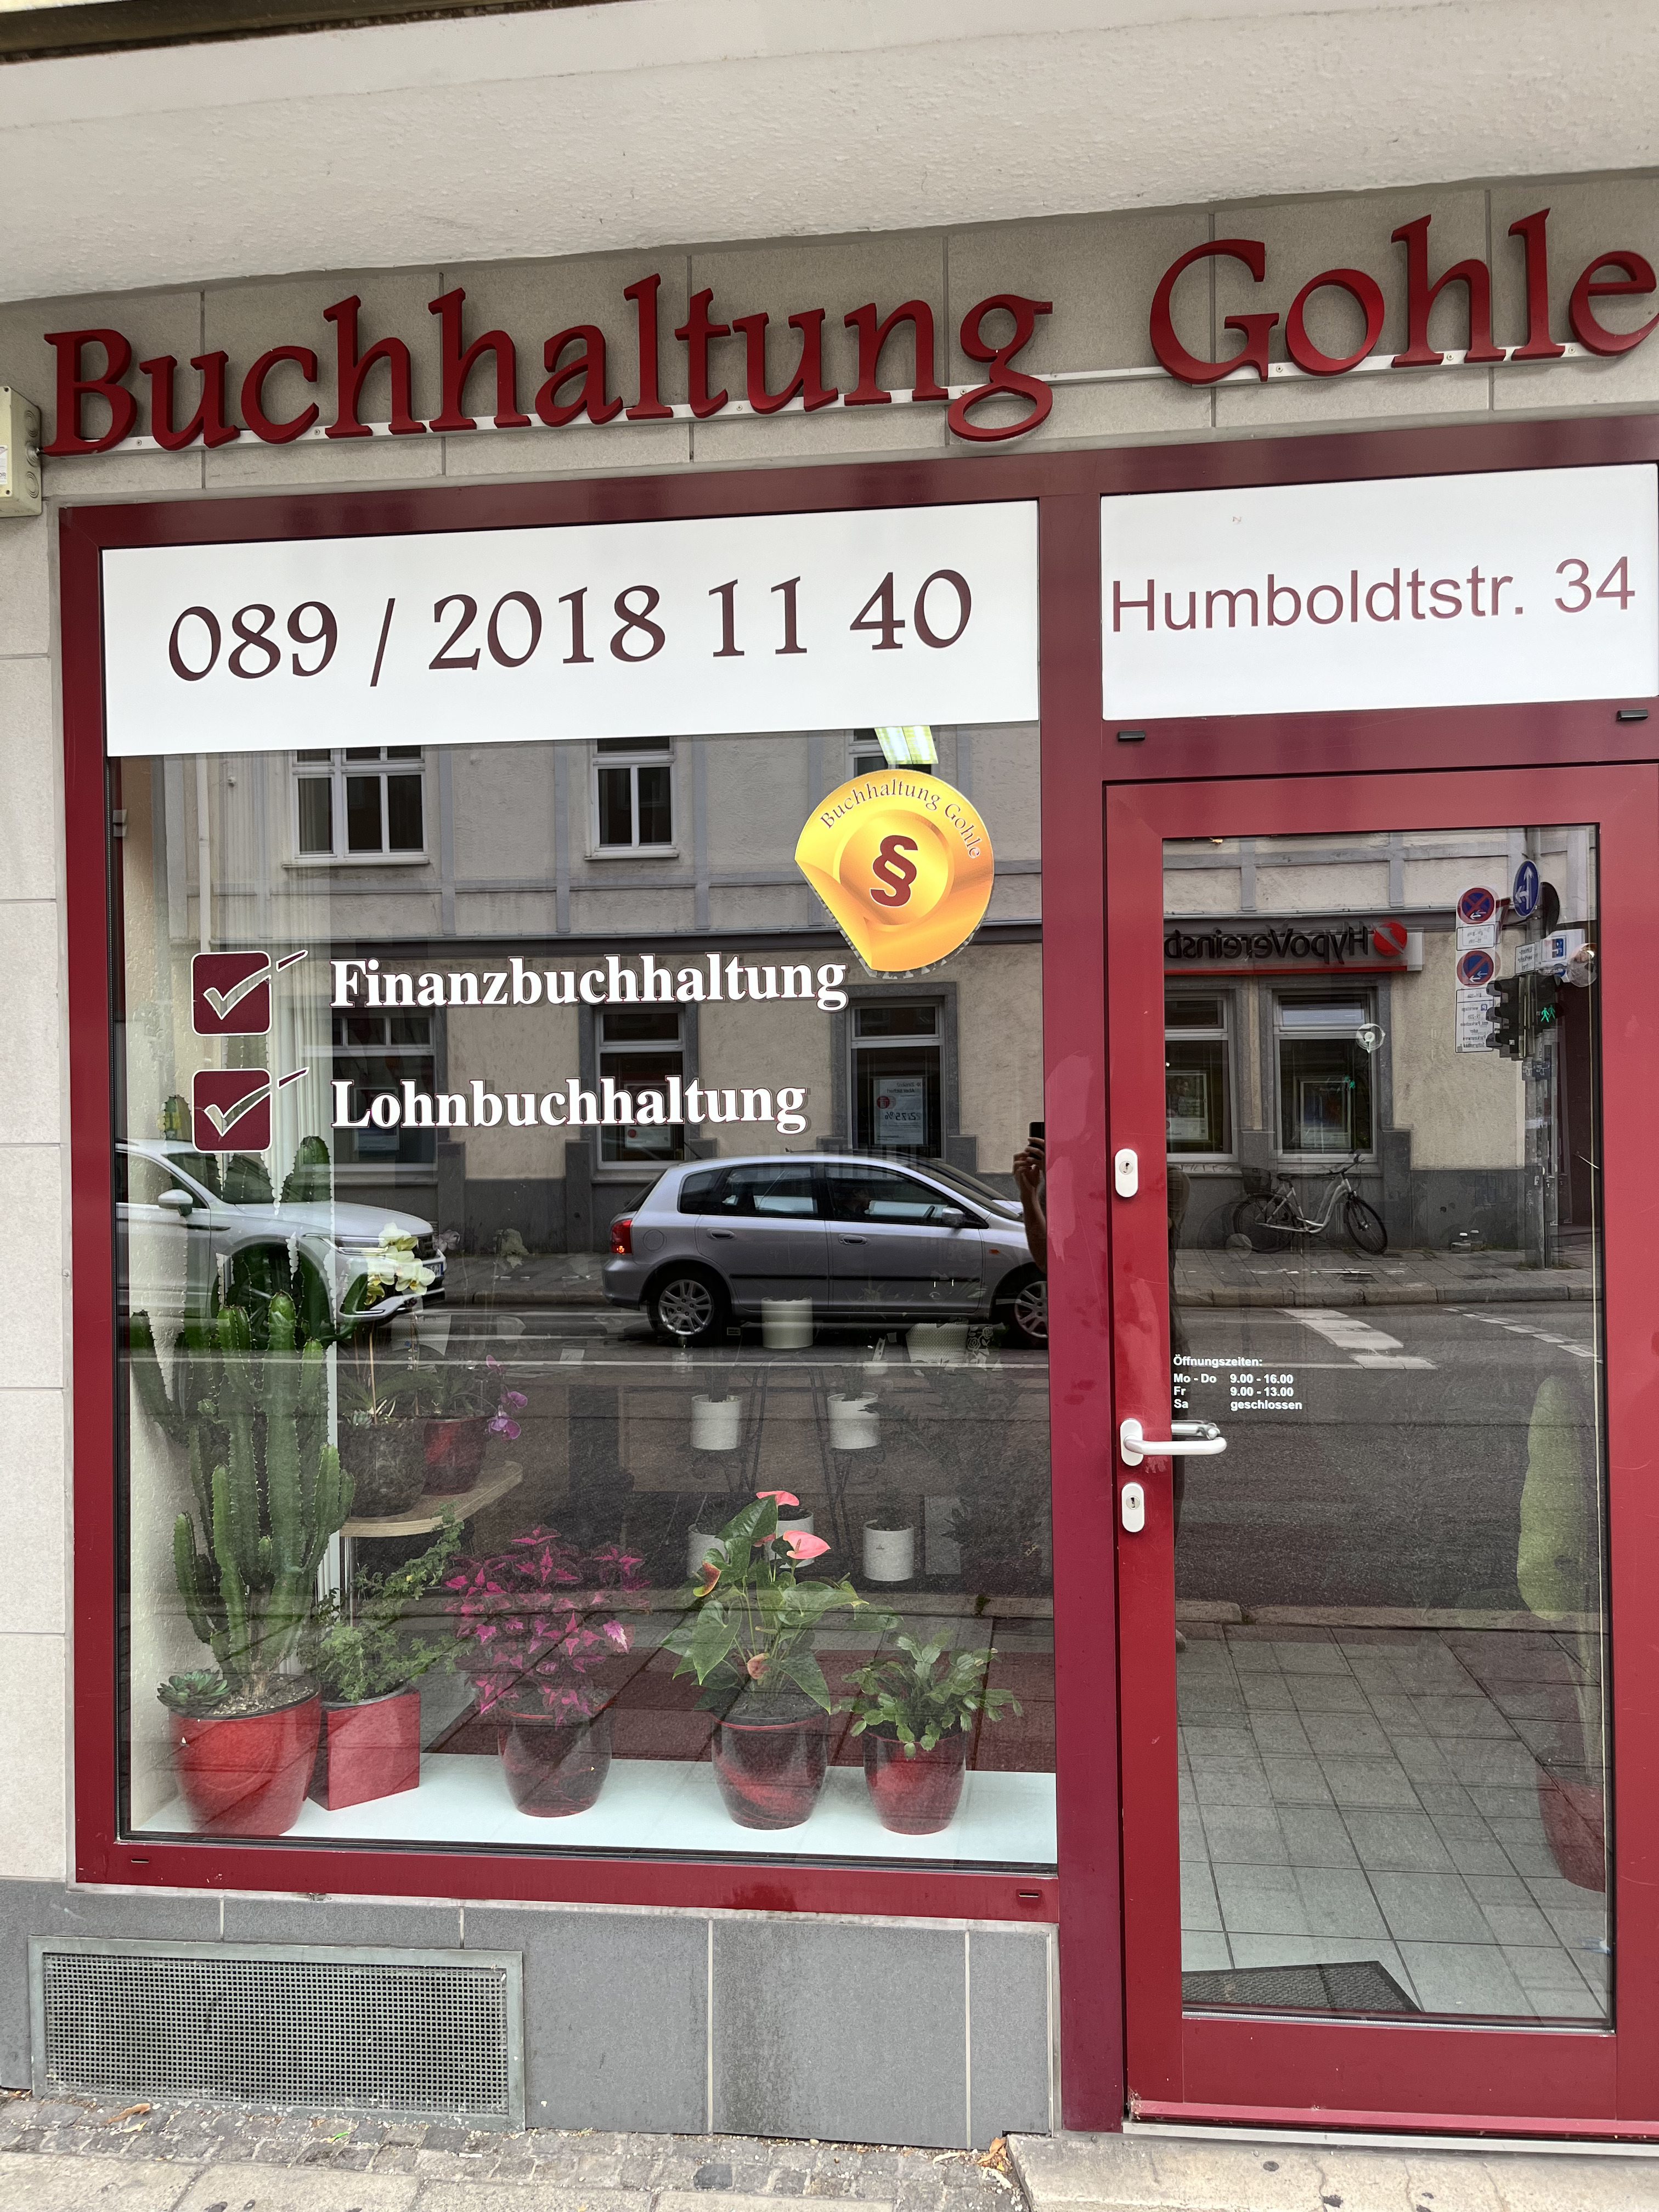 Kundenfoto 1 Buchhaltung Gohle in München